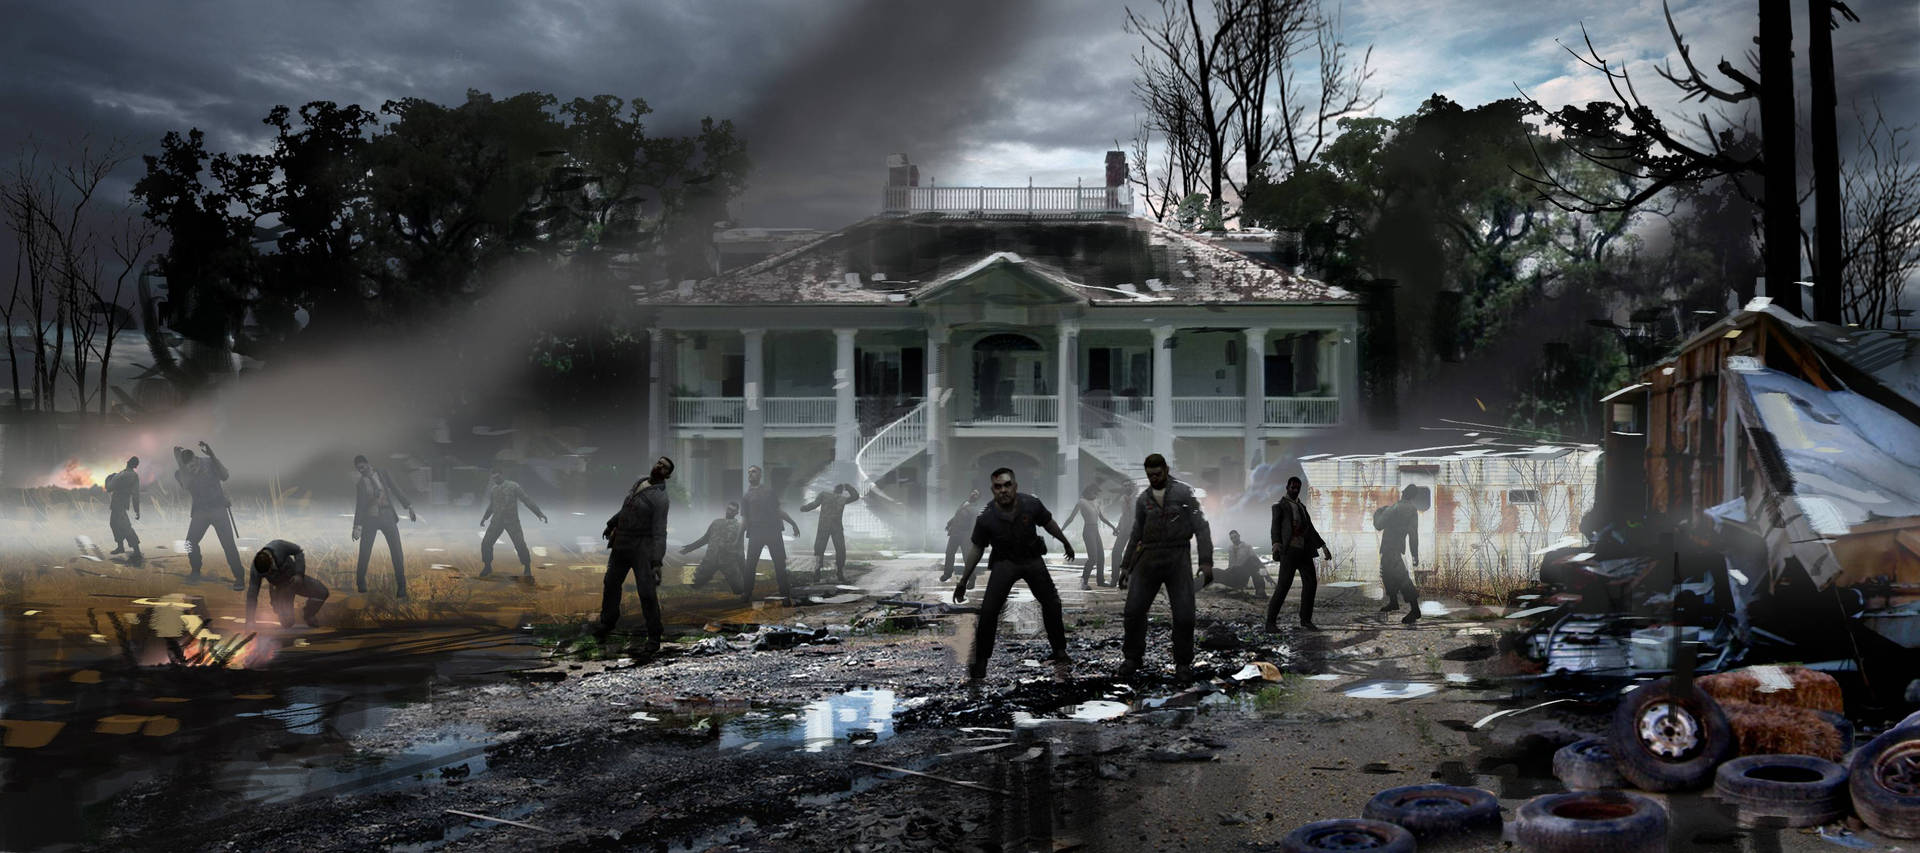 Left 4 Dead 2 Zombies Deserted House Wallpaper